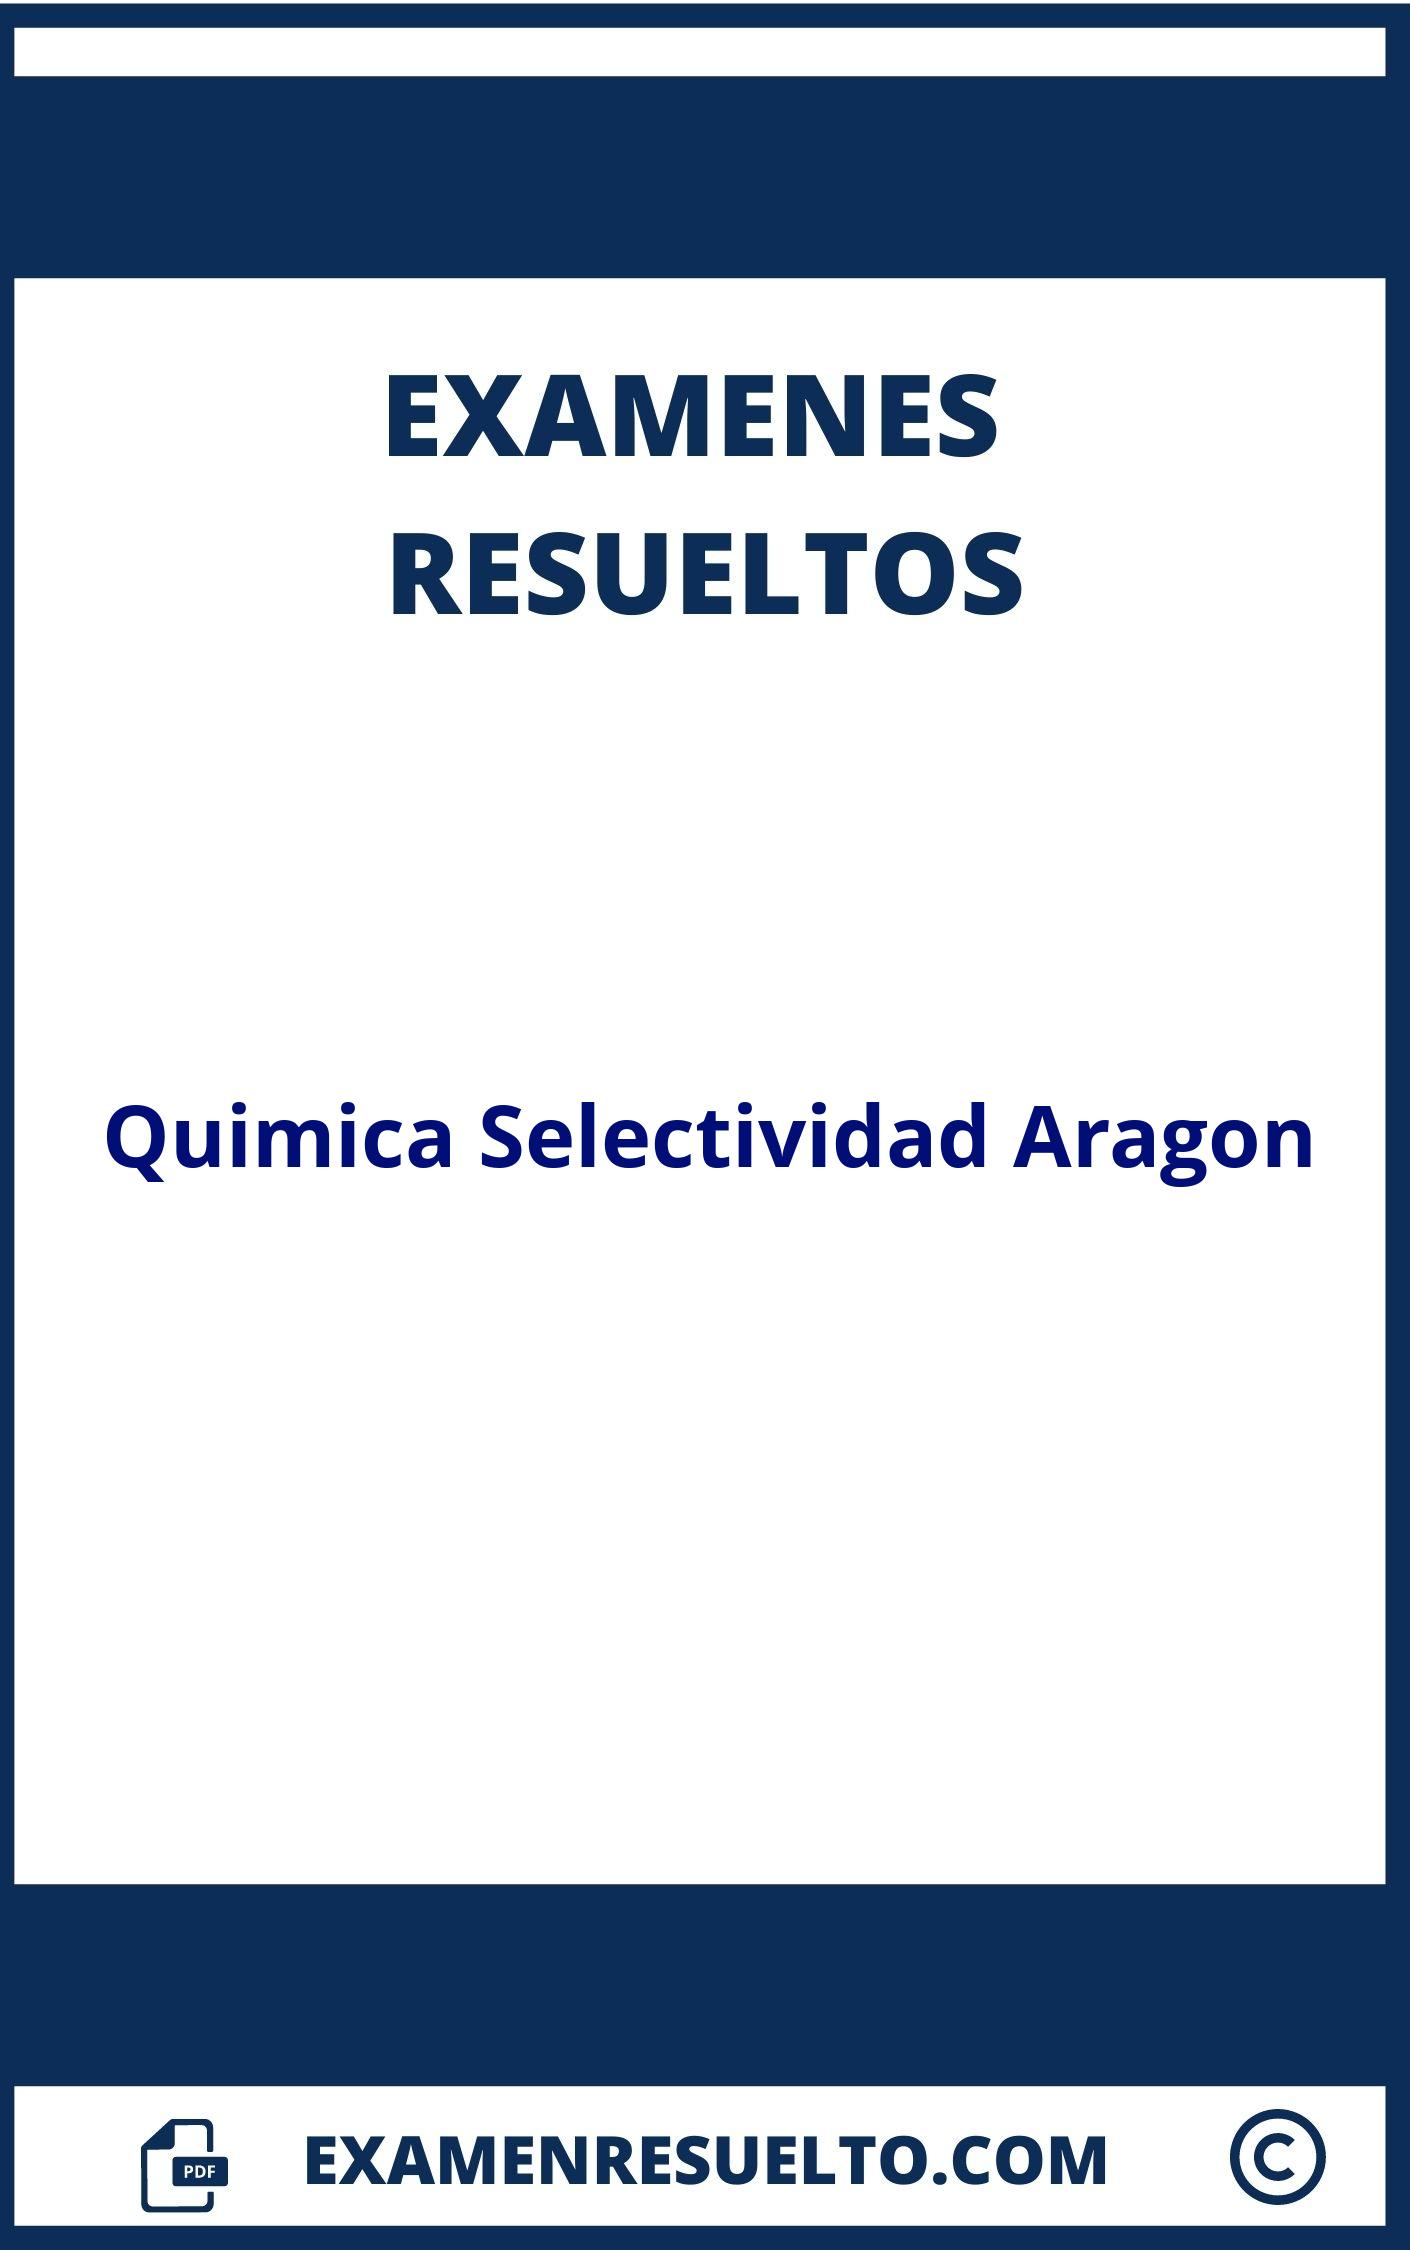 Examenes Quimica Selectividad Aragon Resueltos